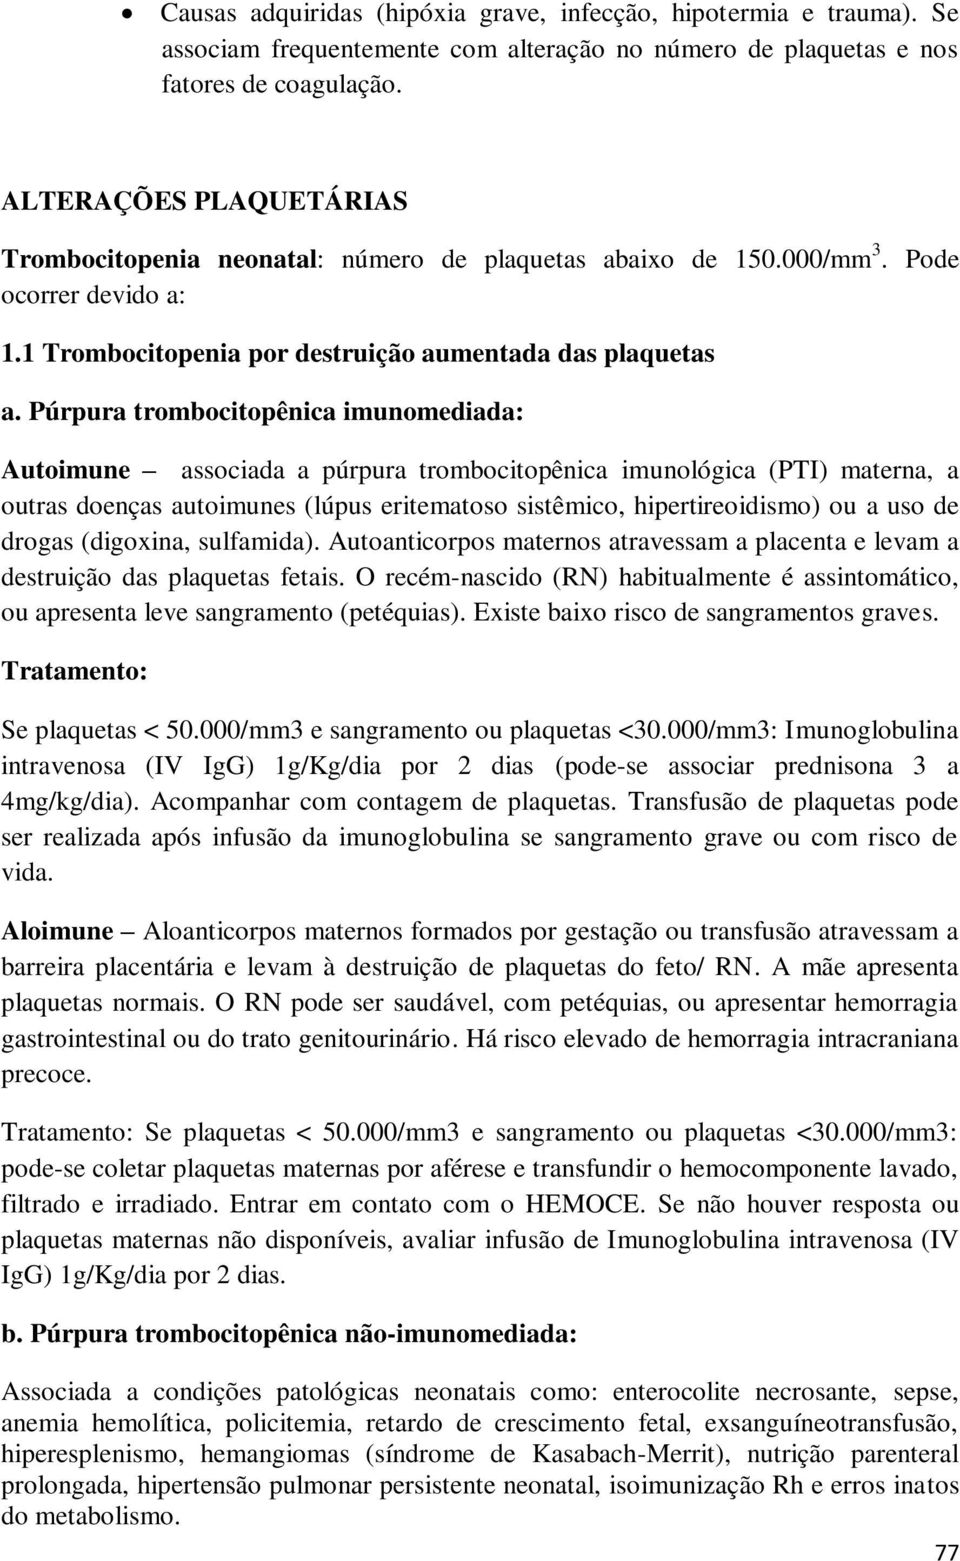 Púrpura trombocitopênica imunomediada: Autoimune associada a púrpura trombocitopênica imunológica (PTI) materna, a outras doenças autoimunes (lúpus eritematoso sistêmico, hipertireoidismo) ou a uso